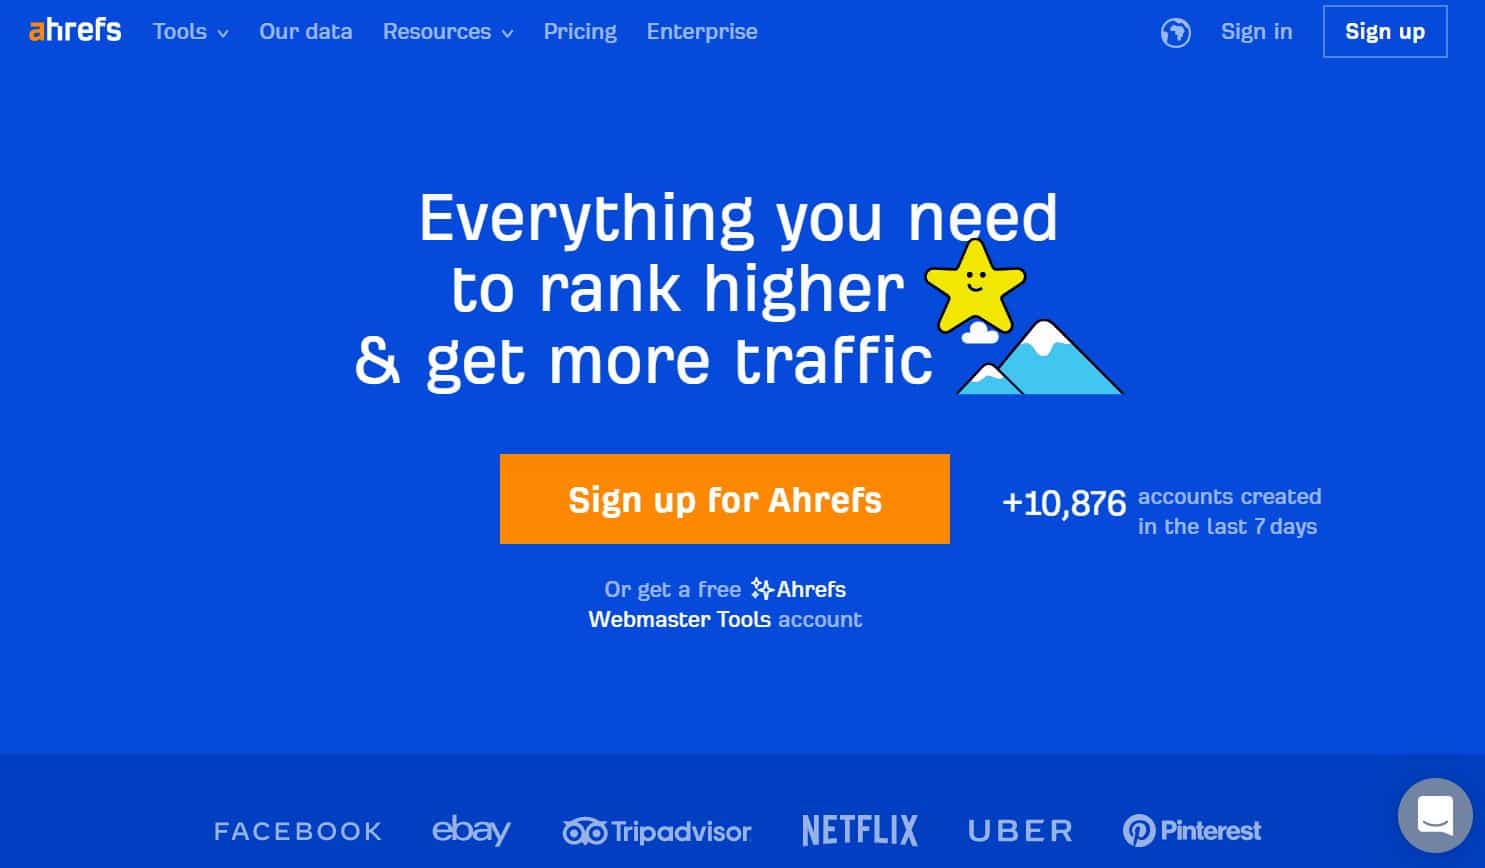 Ahrefs hjemmeside med slogan "Alt hvad du behøver for at rangere højere og få mere trafik".